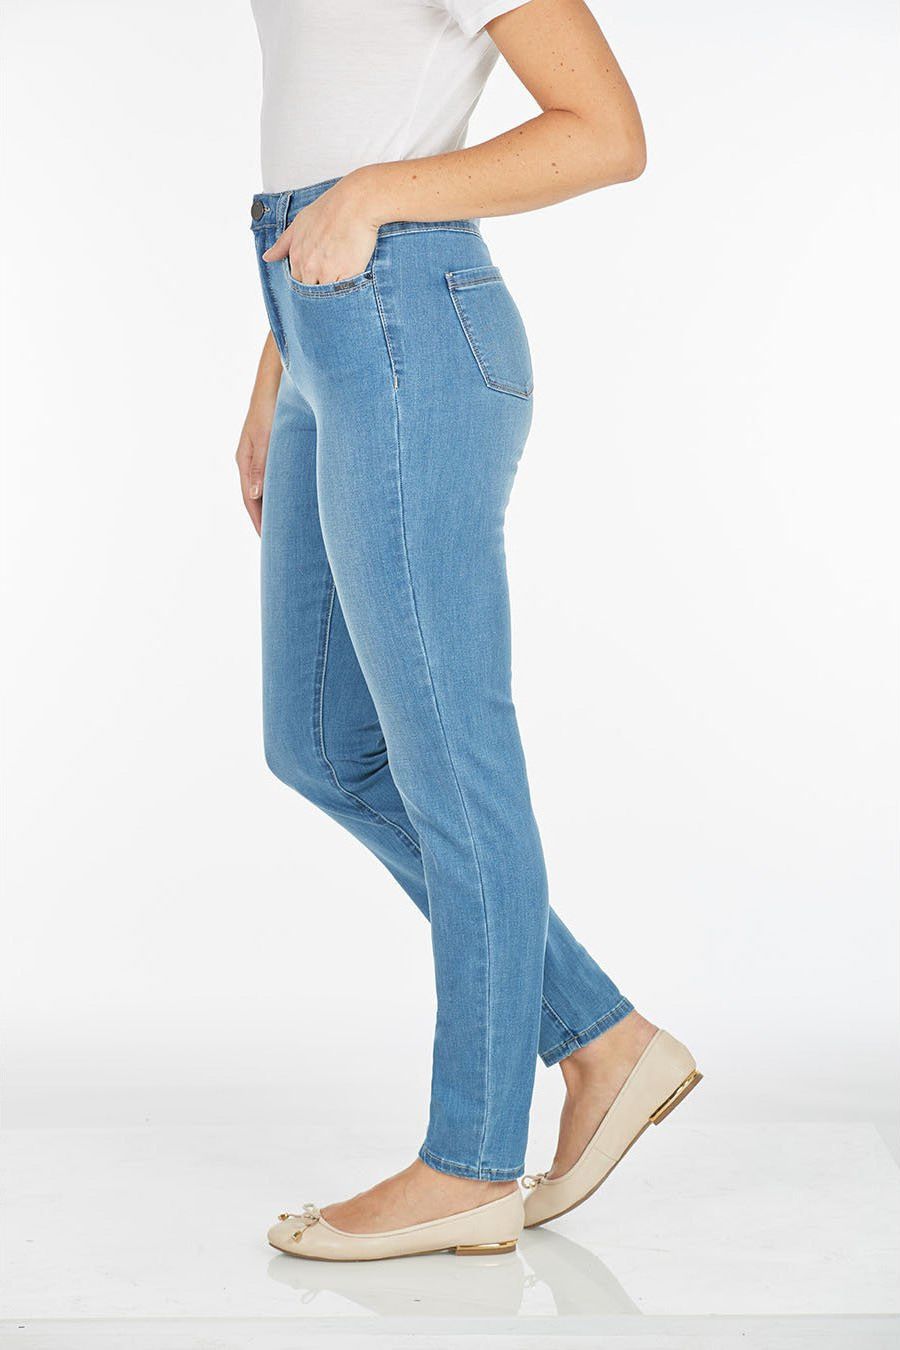 FDJ Petite Suzanne Cool Denim Slim Leg Jean - Style 8705630, side, chambray